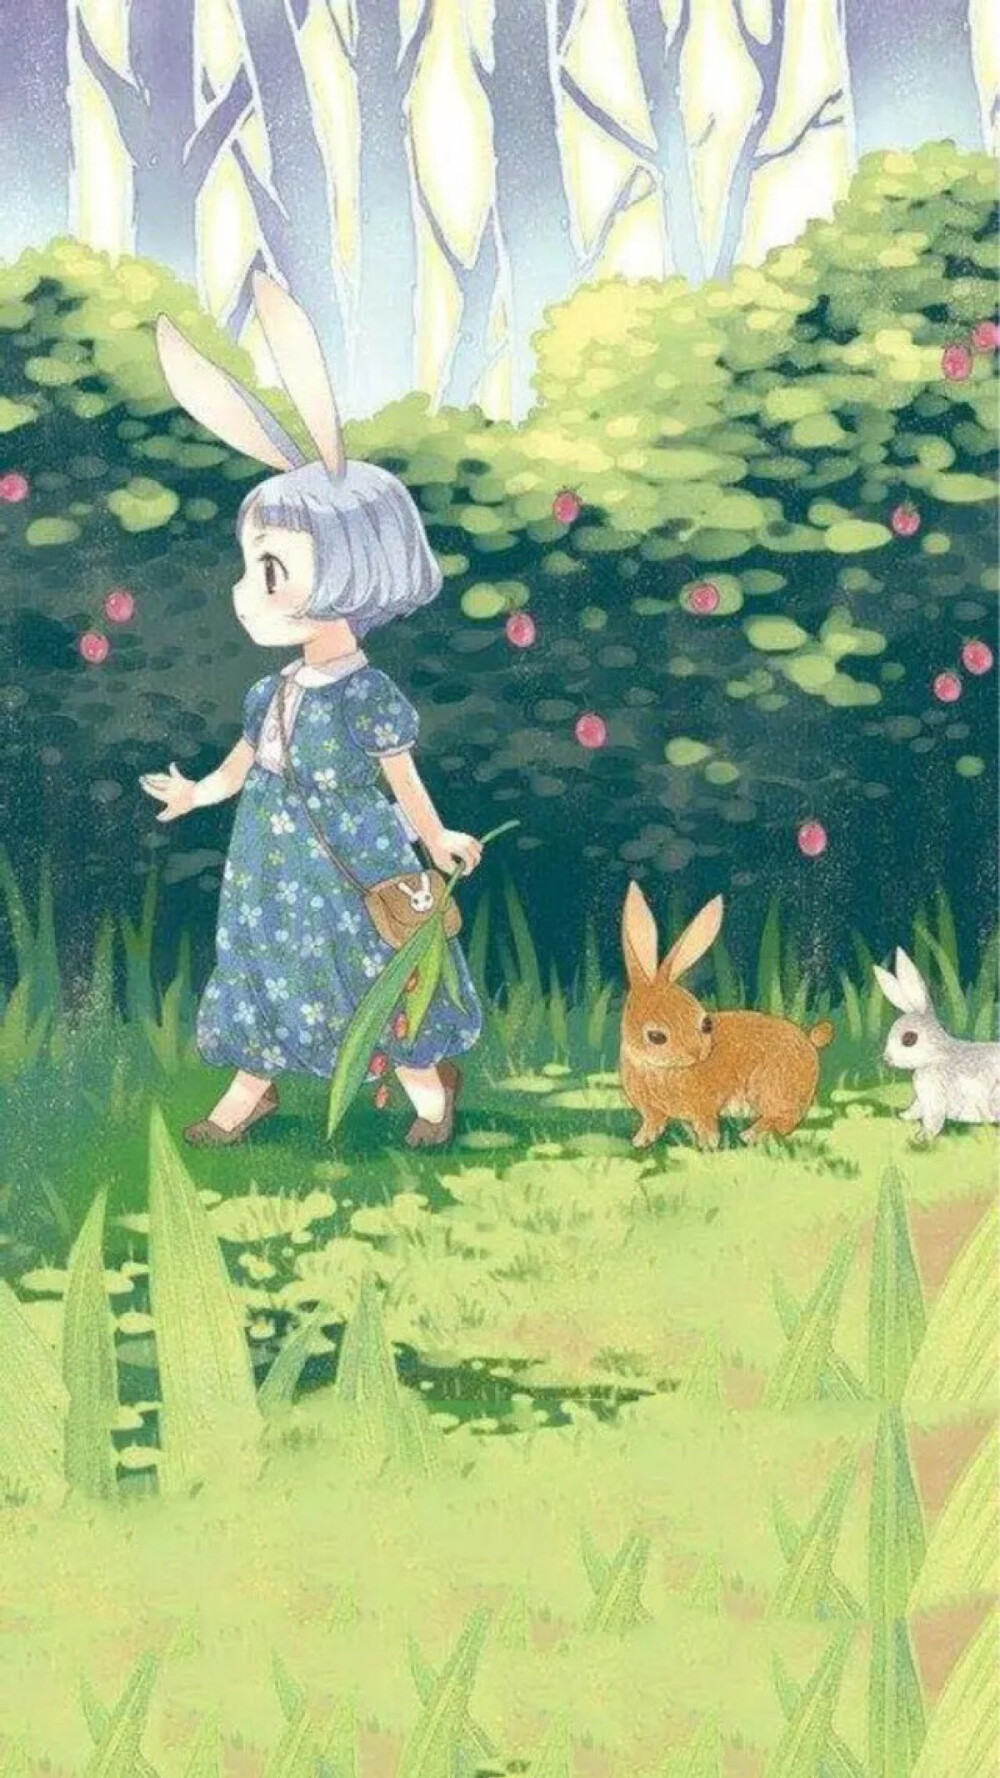 卡通插画女孩与兔子可爱文艺唯美手机壁纸聊天背景